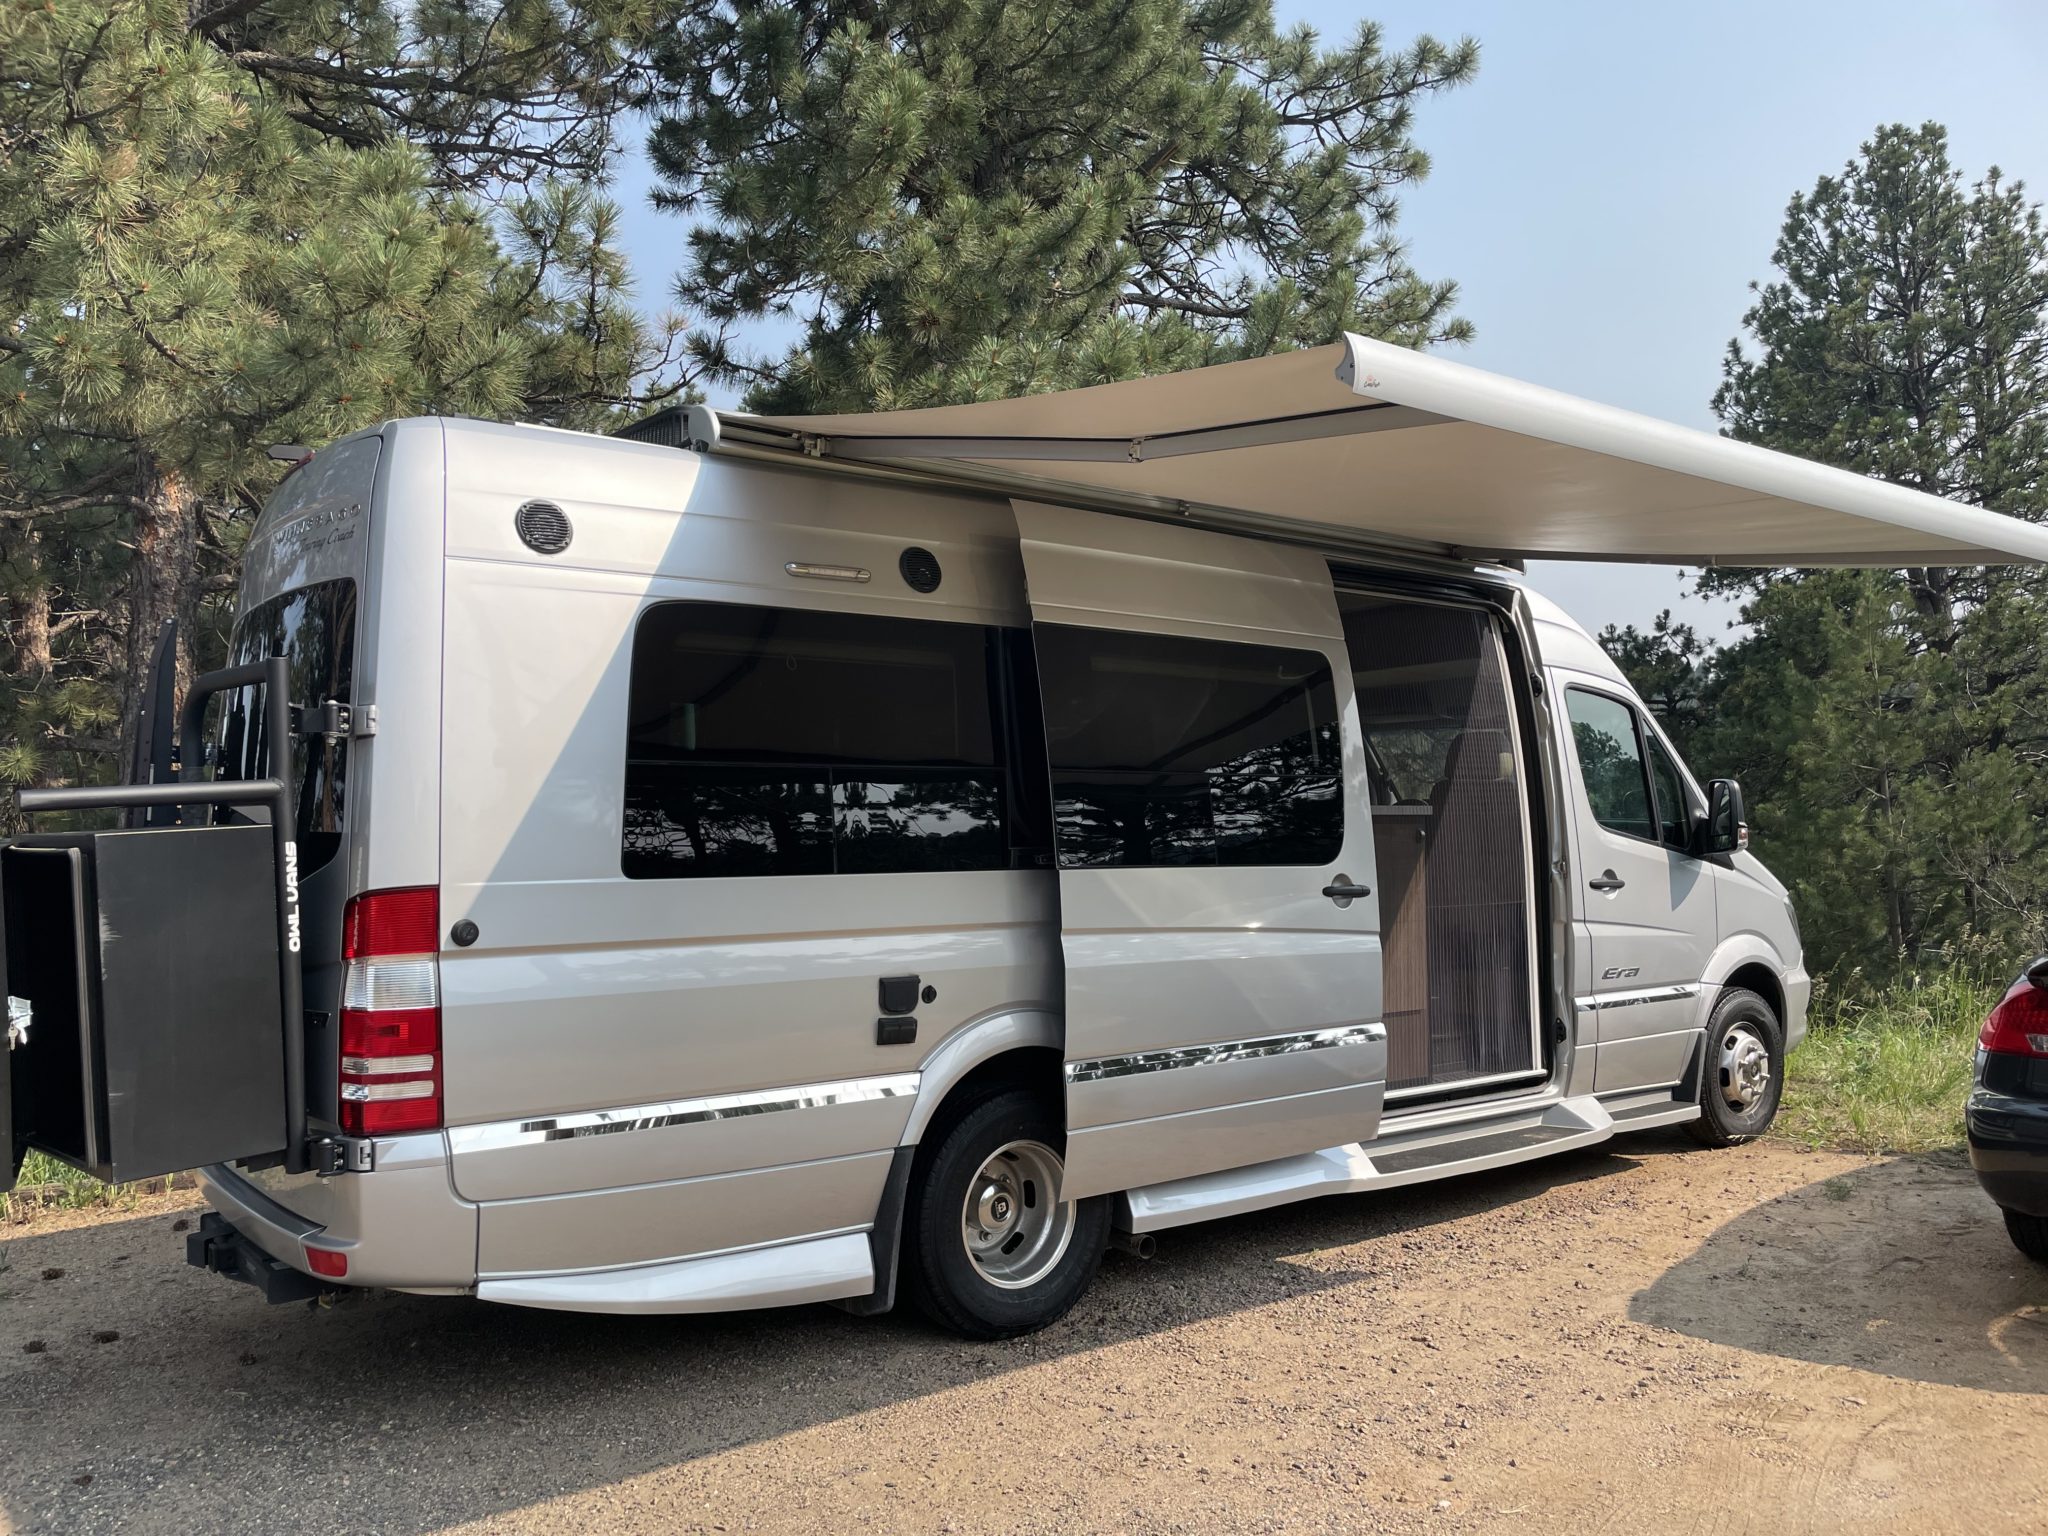 2018 Mercedes Sprinter Camper Van For Sale in Golden, Colorado Van Viewer